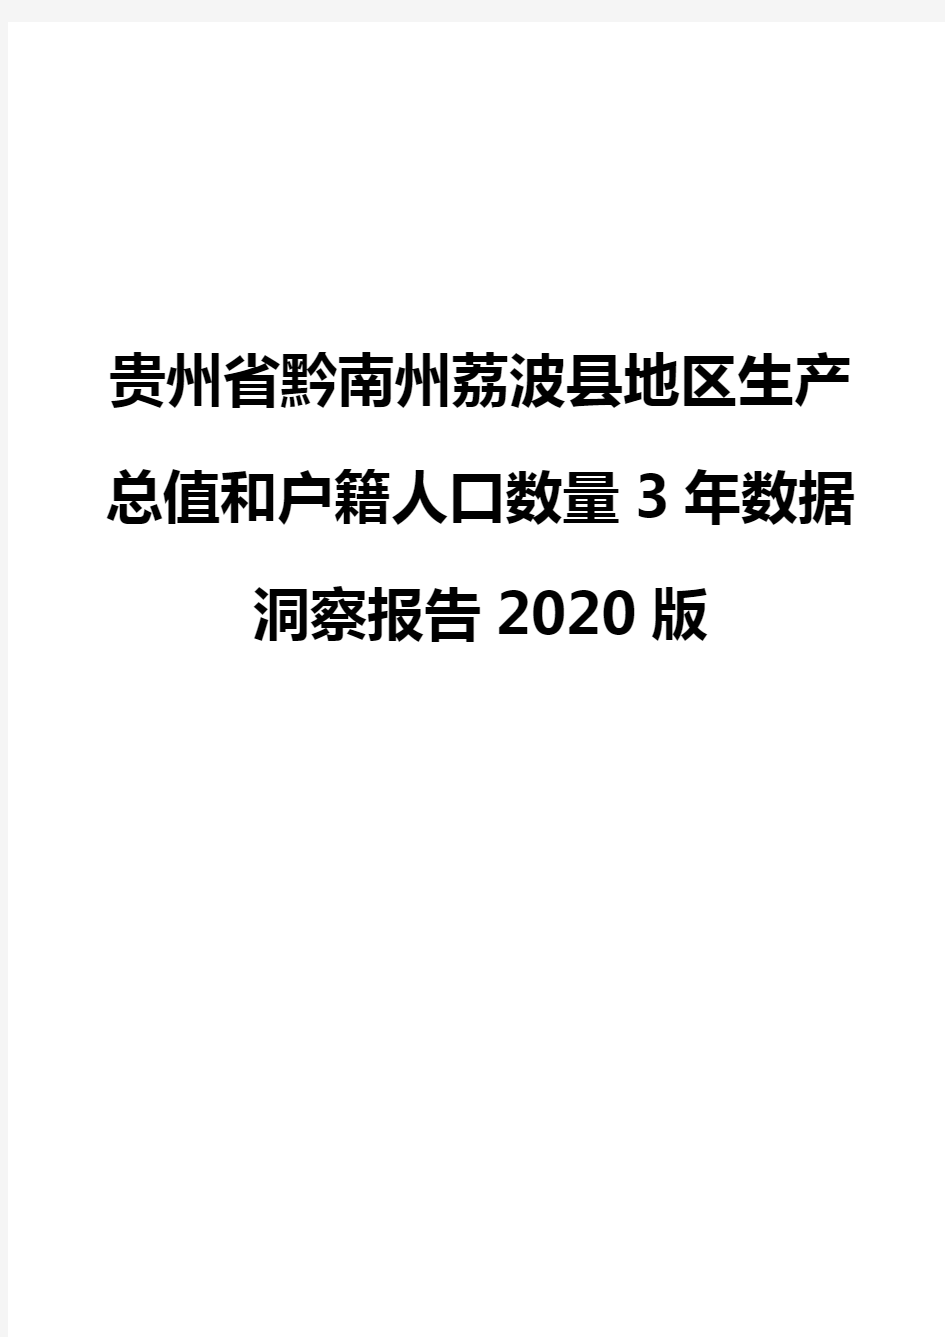 贵州省黔南州荔波县地区生产总值和户籍人口数量3年数据洞察报告2020版